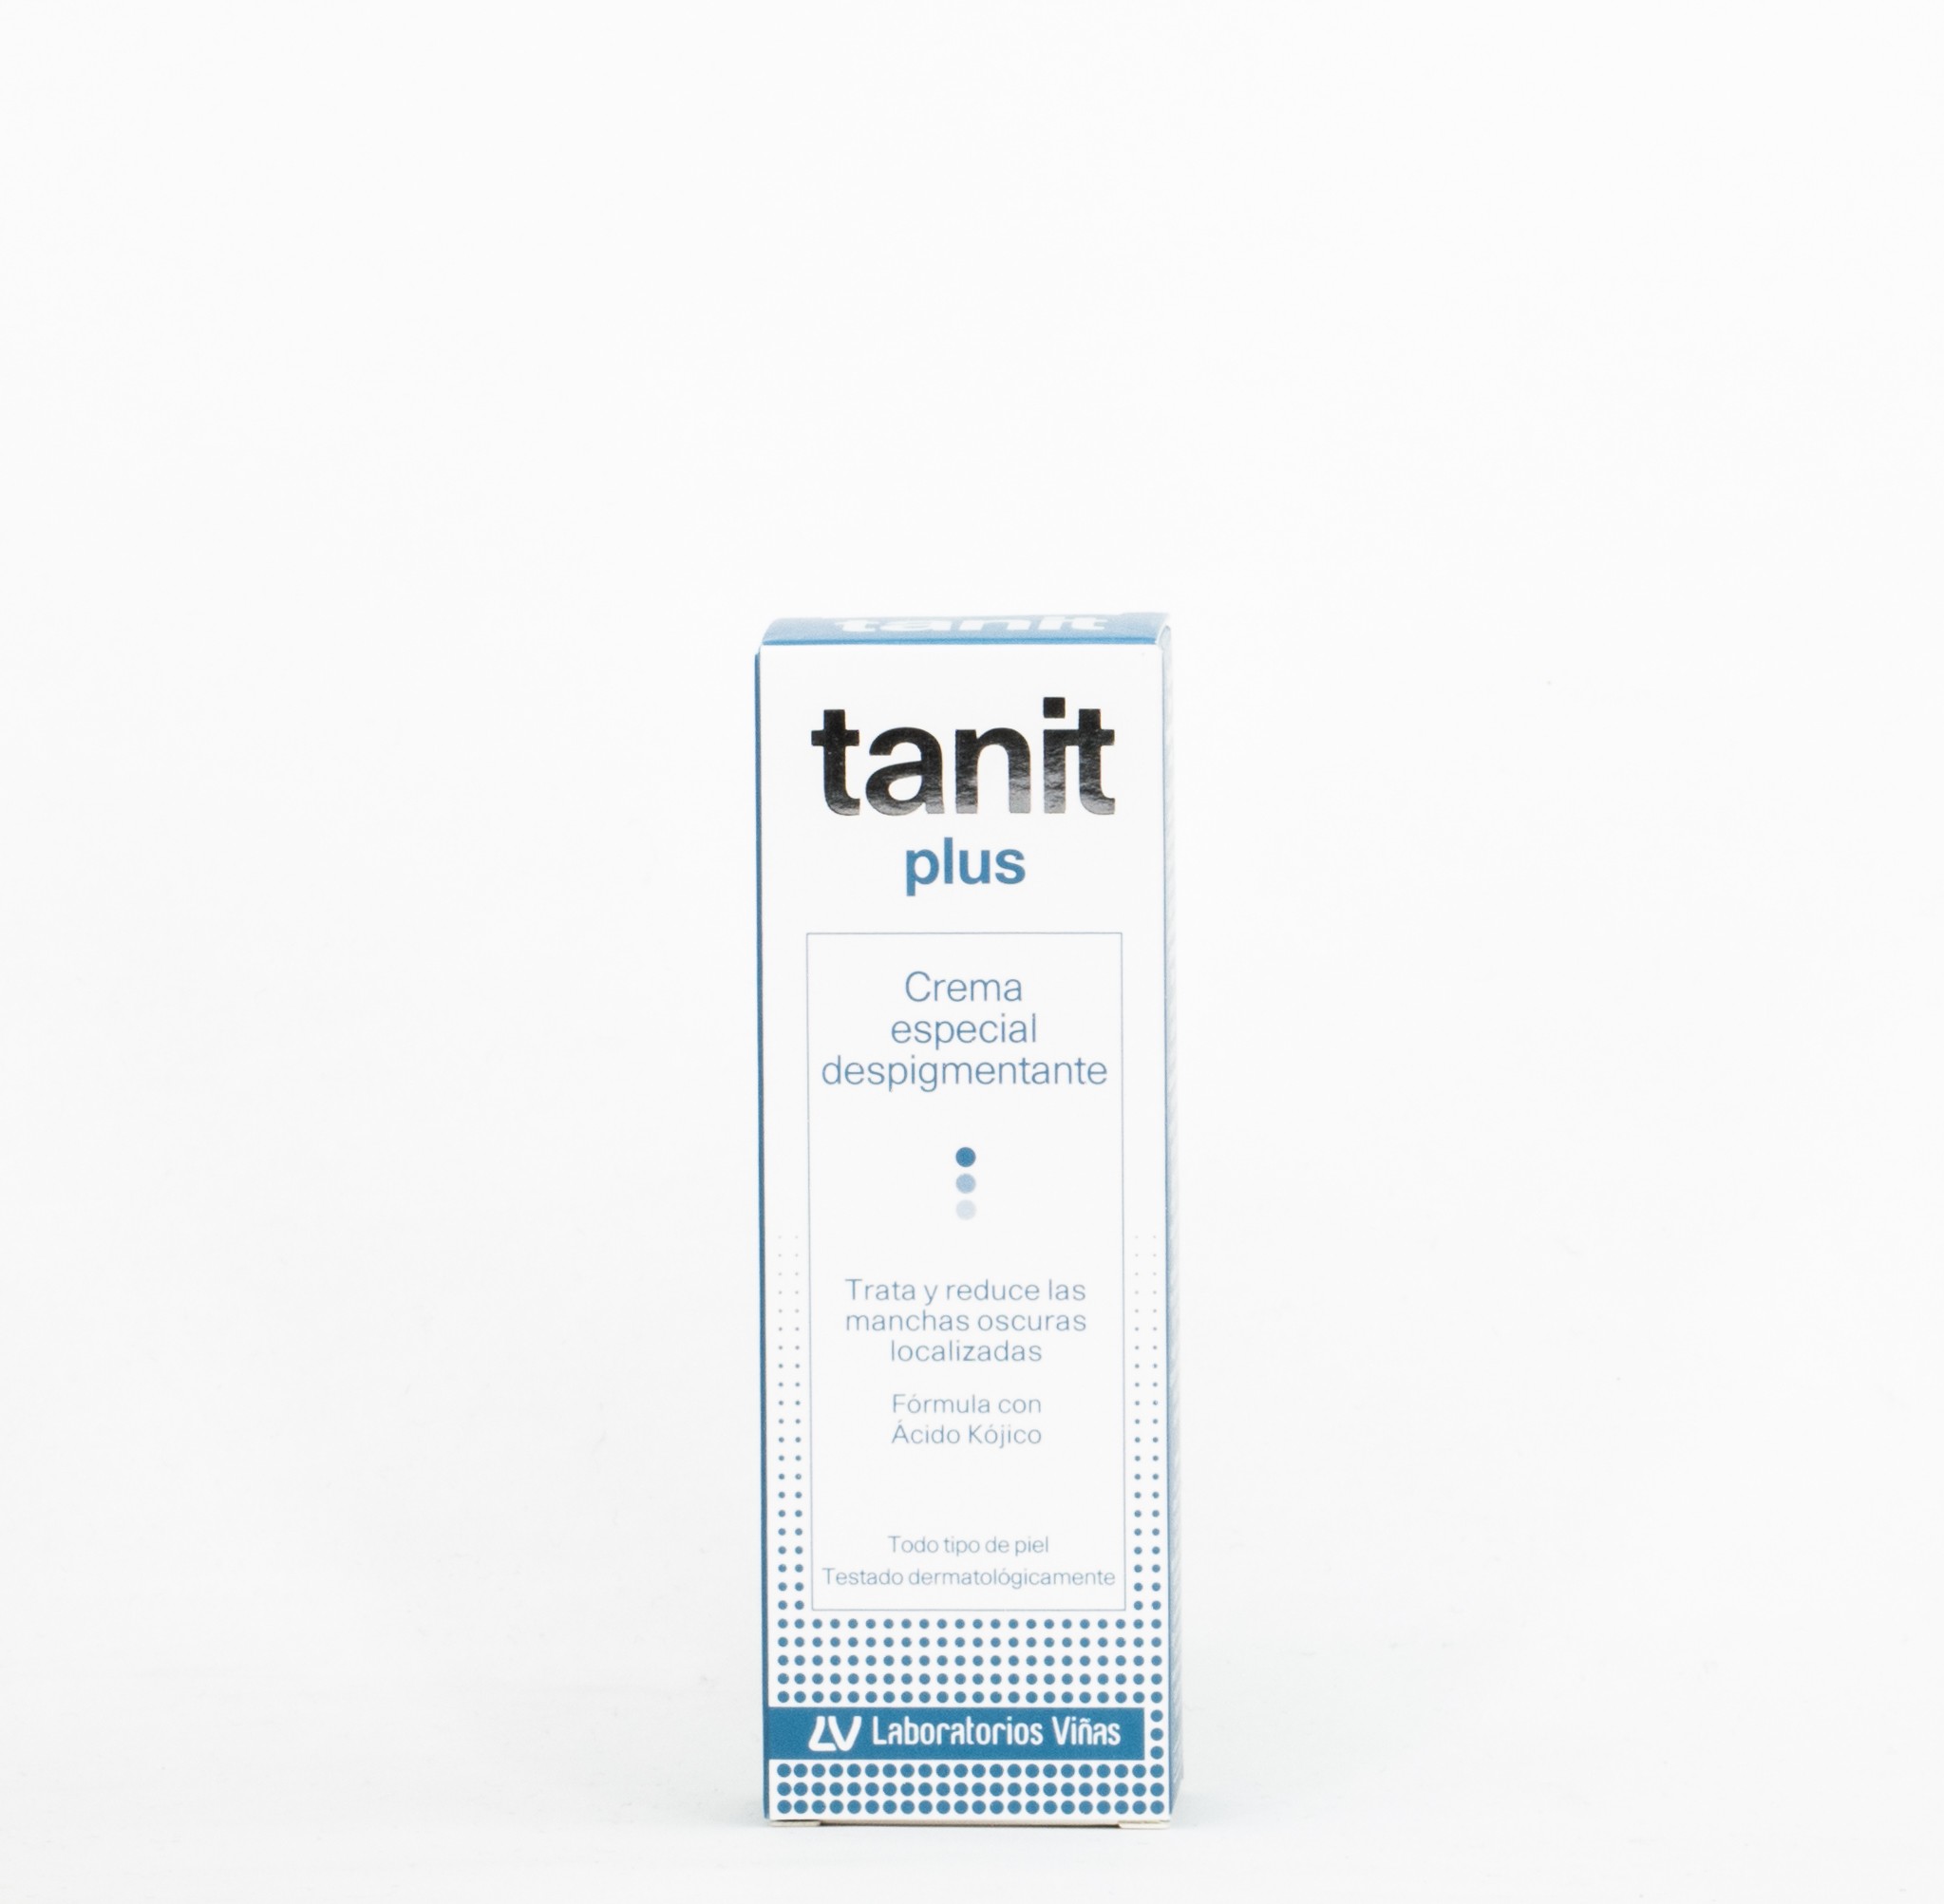 Tanit Plus Creme Despigmentante Especial, 15ml.